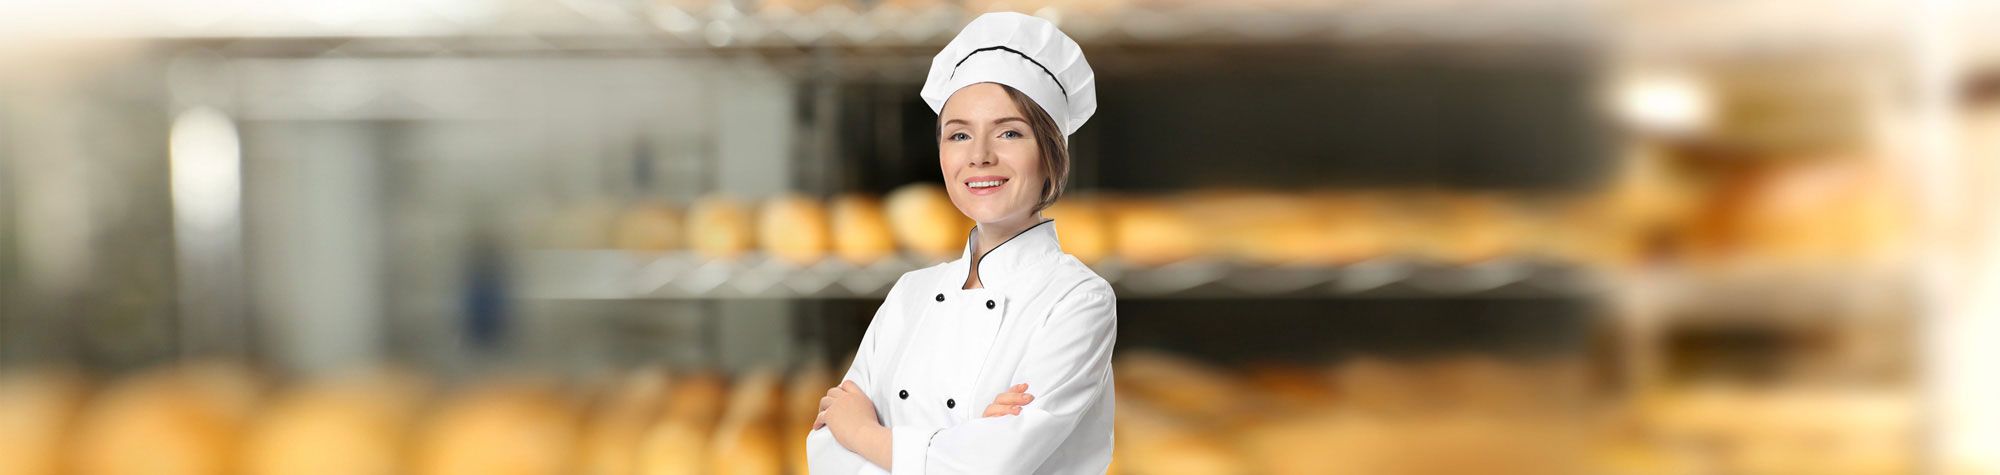 Vrouwelijk personeelslid in bakkerij